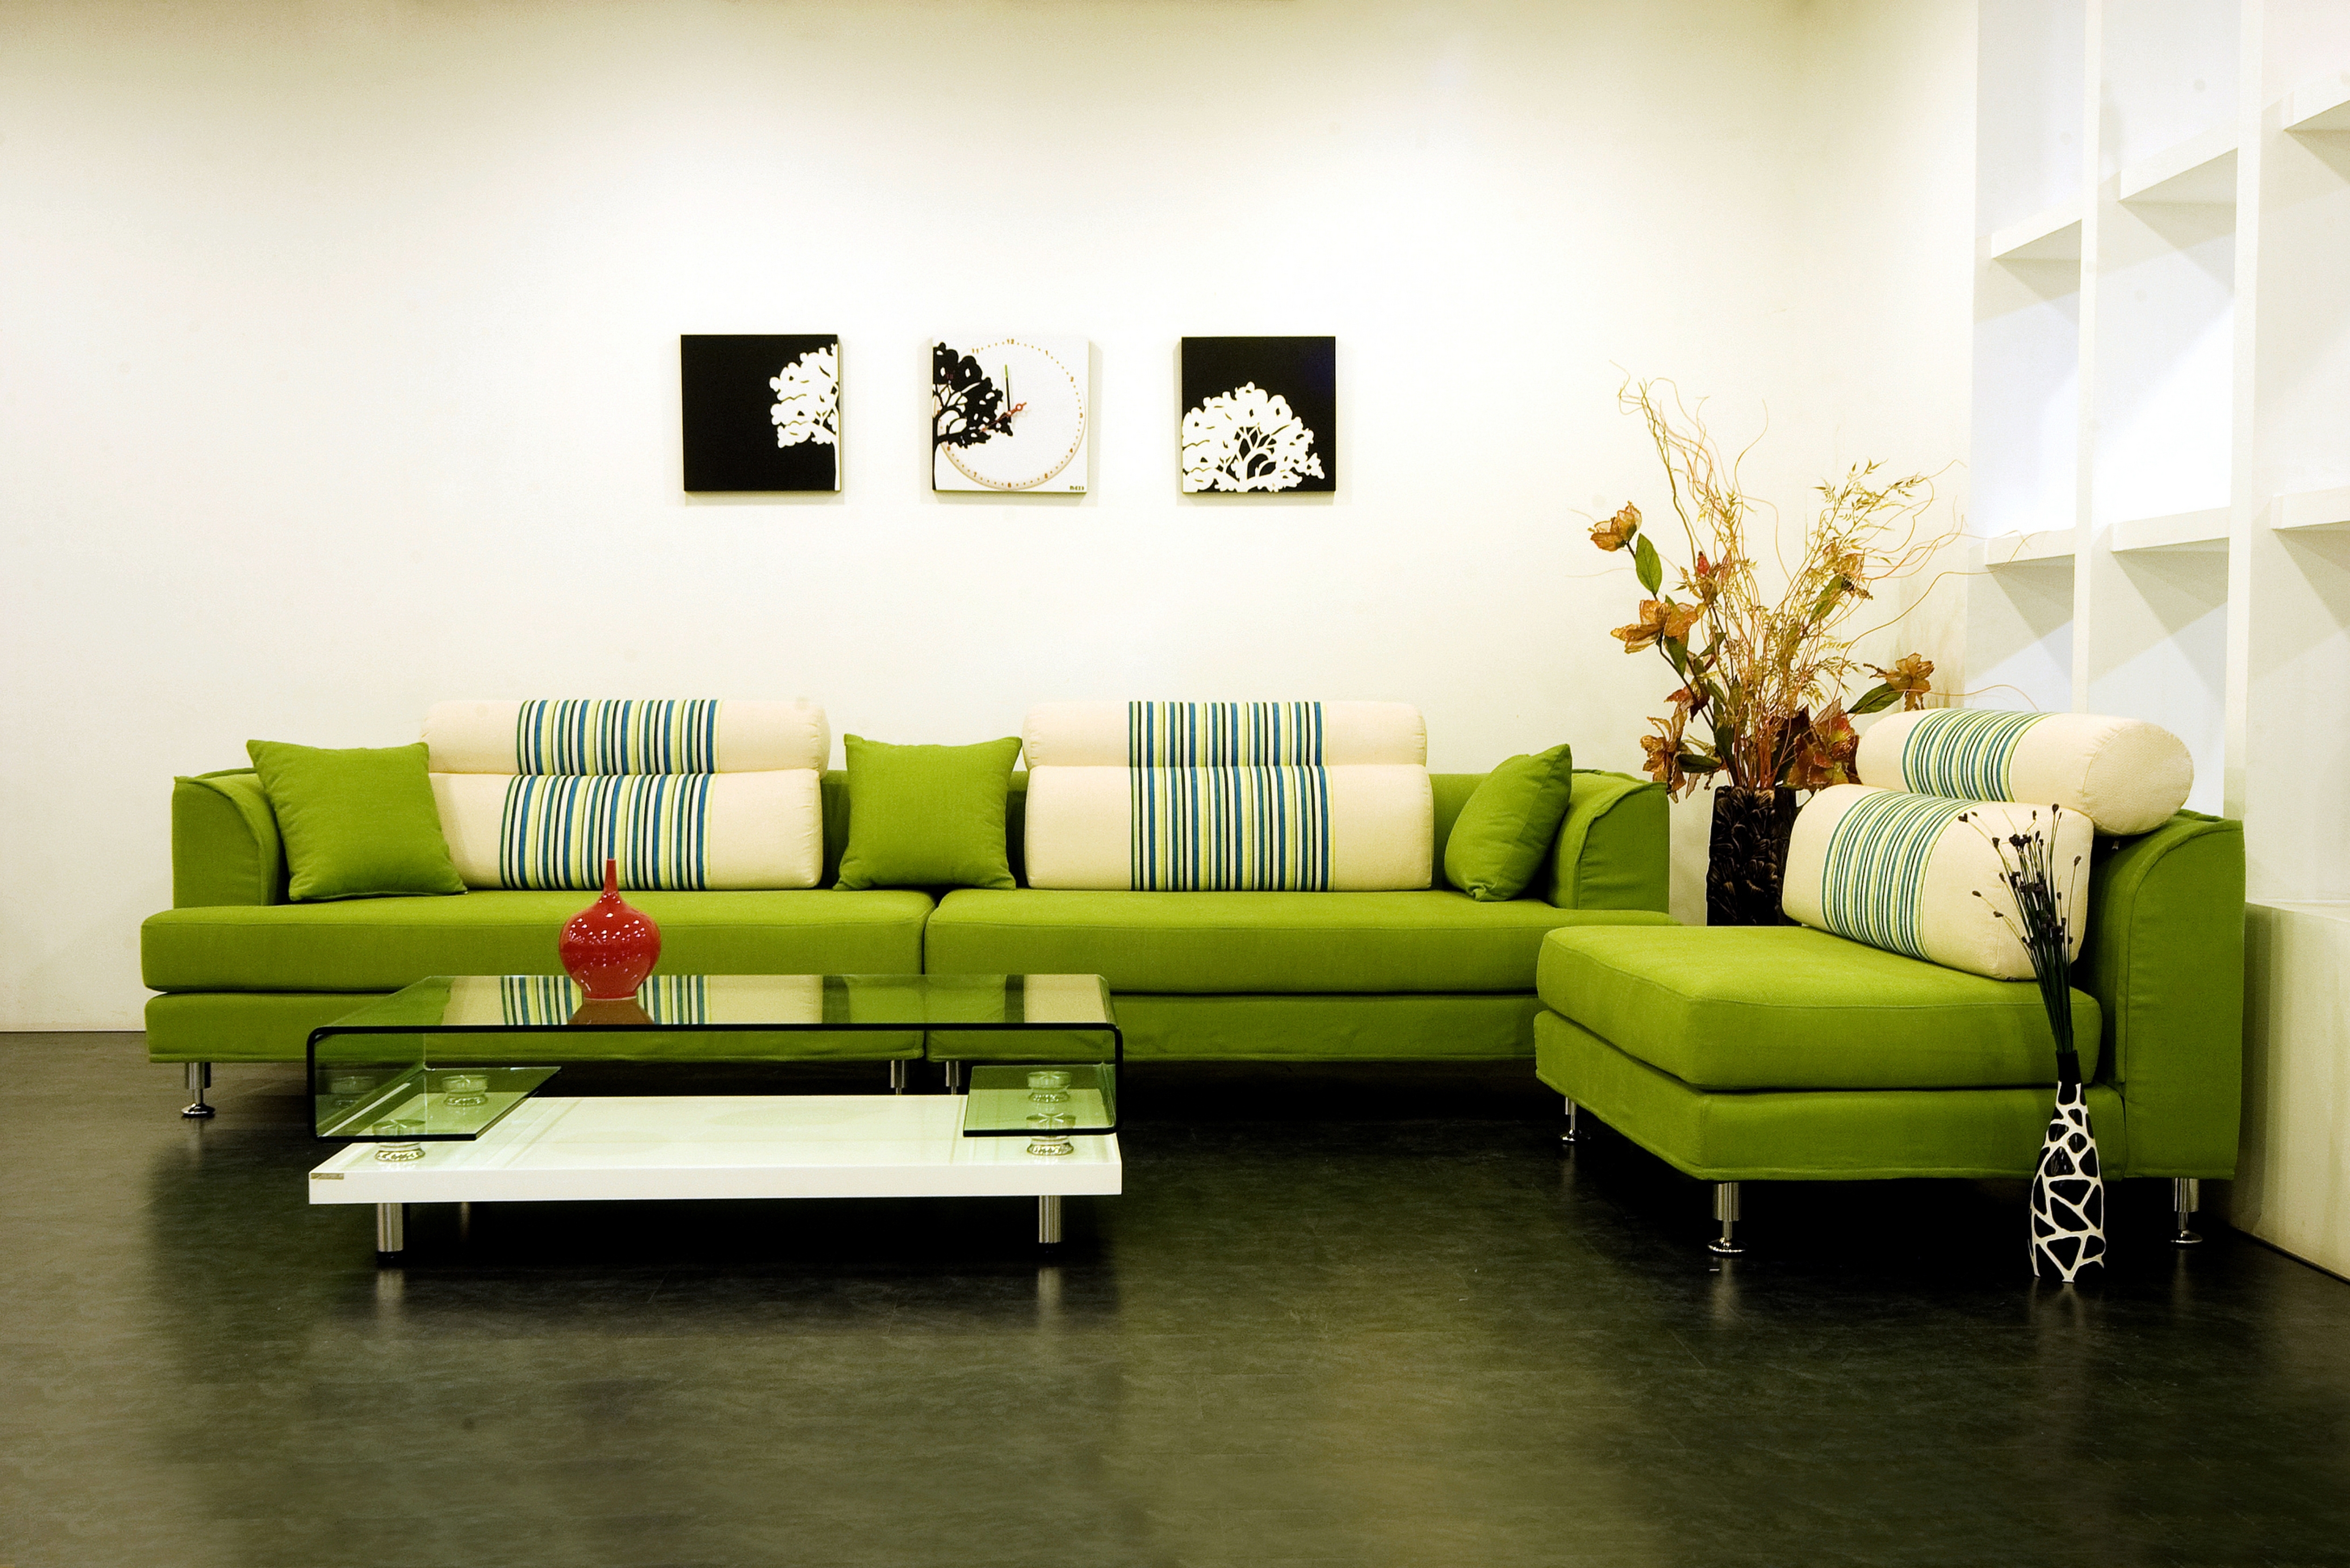 Sofa pictures. Диван в интерьере. Красивый диван в интерьере. Салатовый диван в интерьере. Зеленый диван в интерьере.